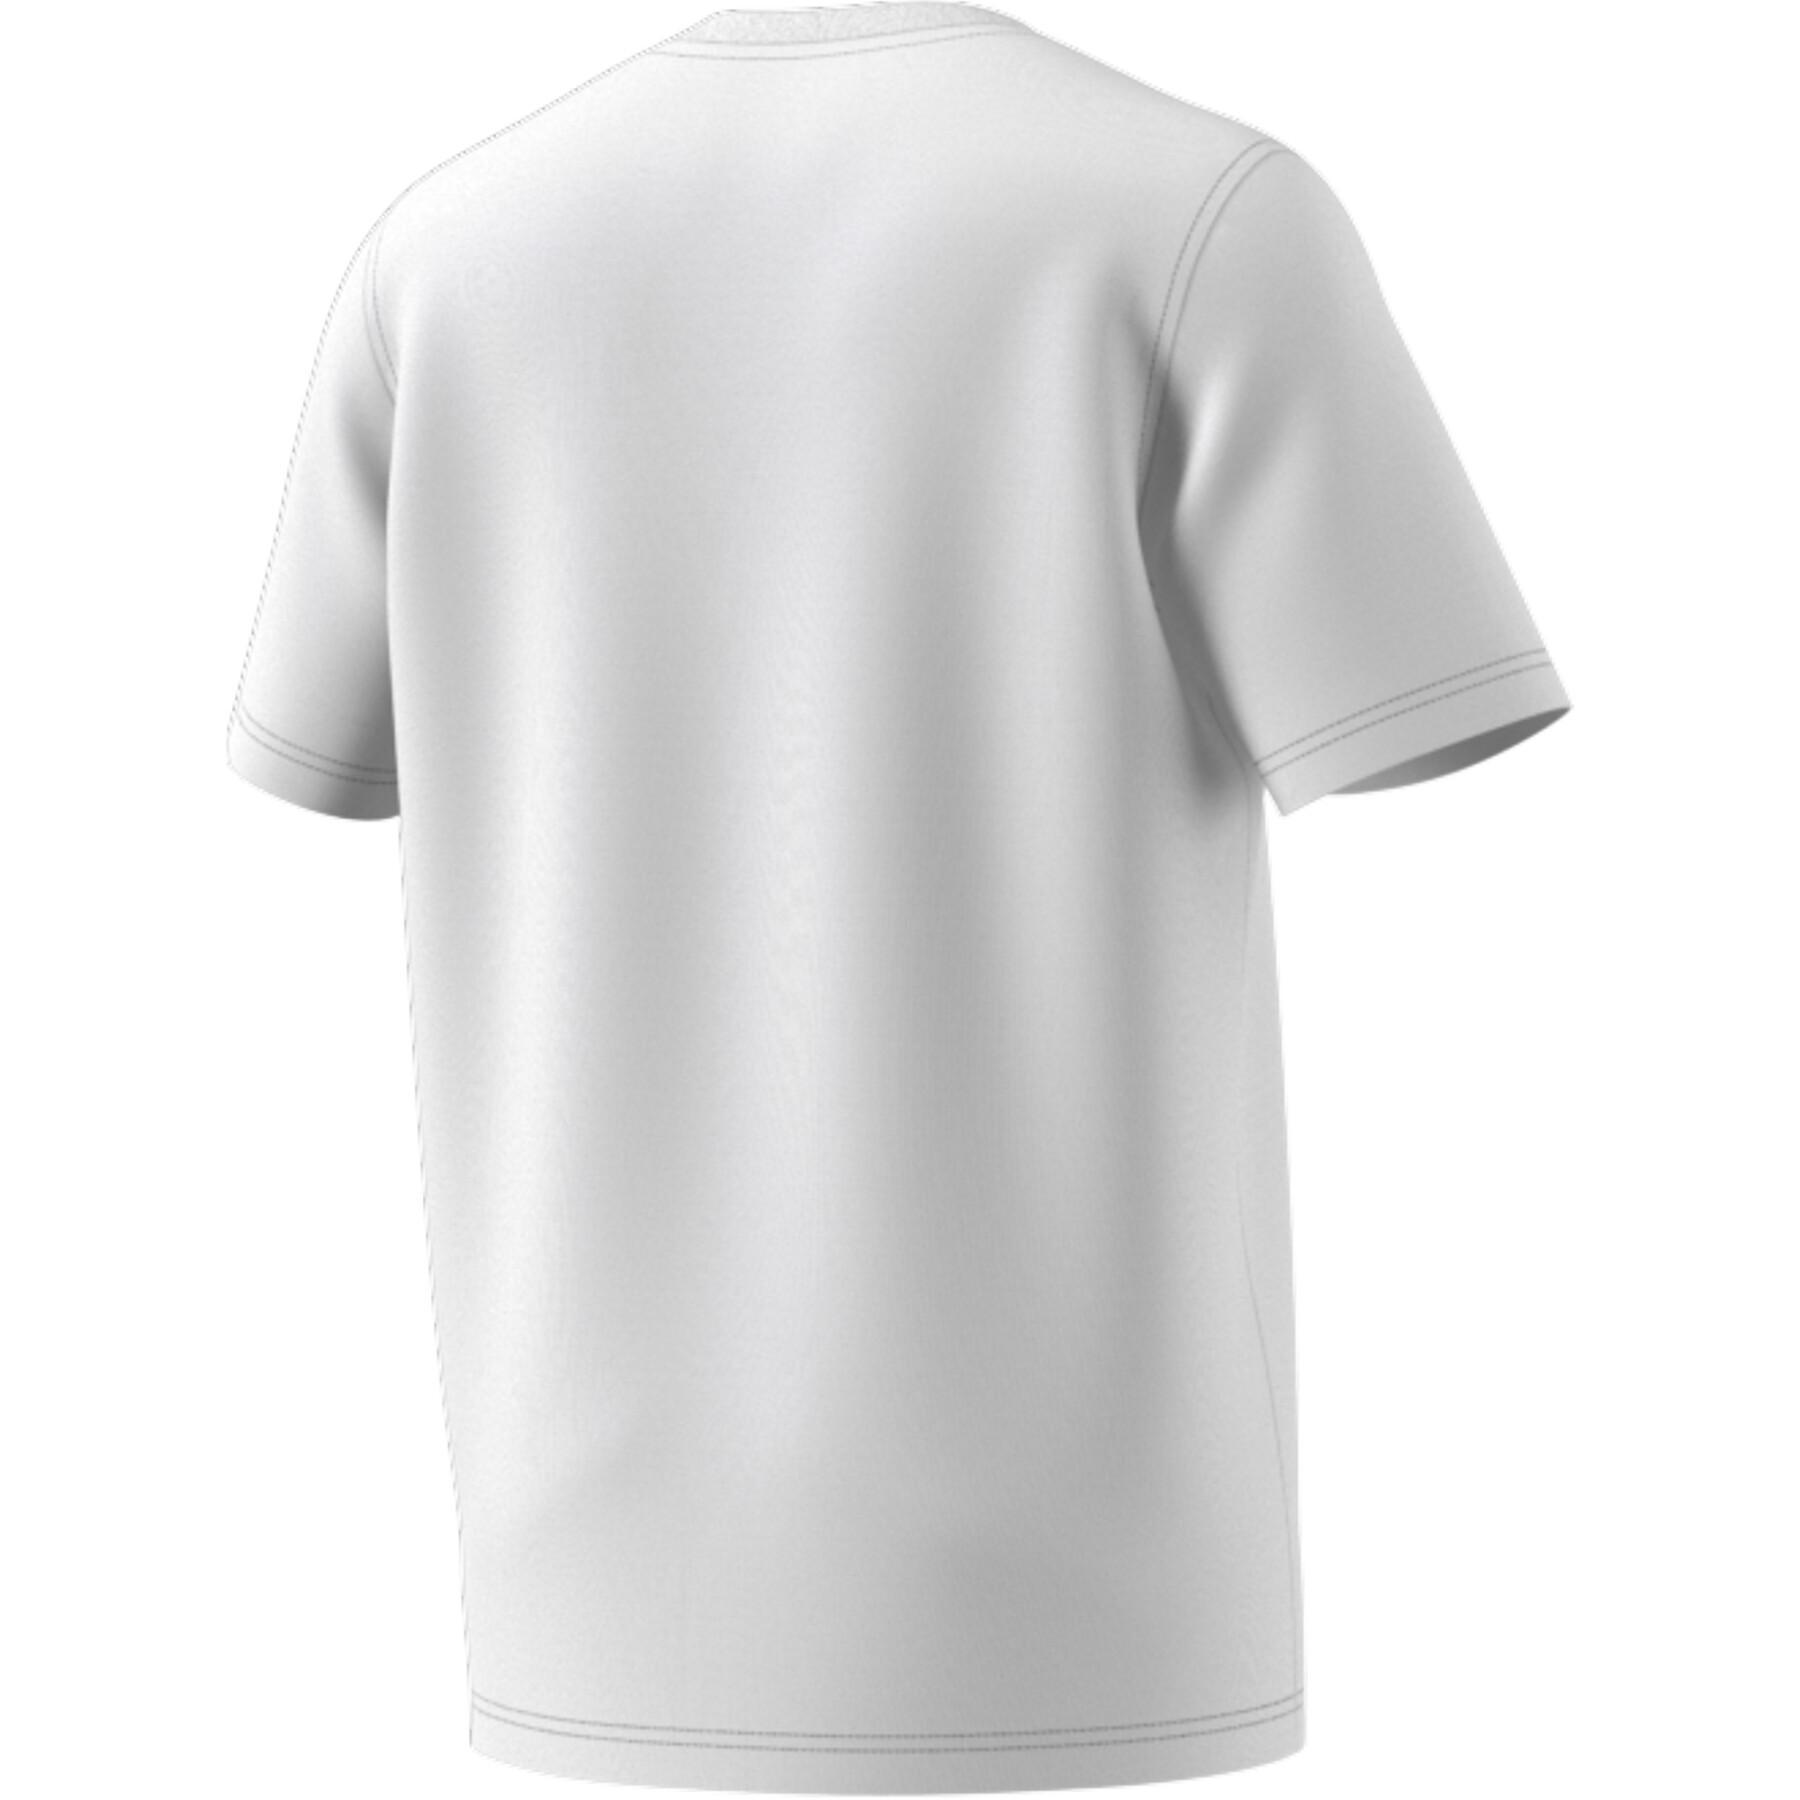 Classics The T-Shirts - Short adidas adidas - Adicolor sleeve T-Shirts: T-shirt Originals T-Shirts Trendiest - Originals Trefoil